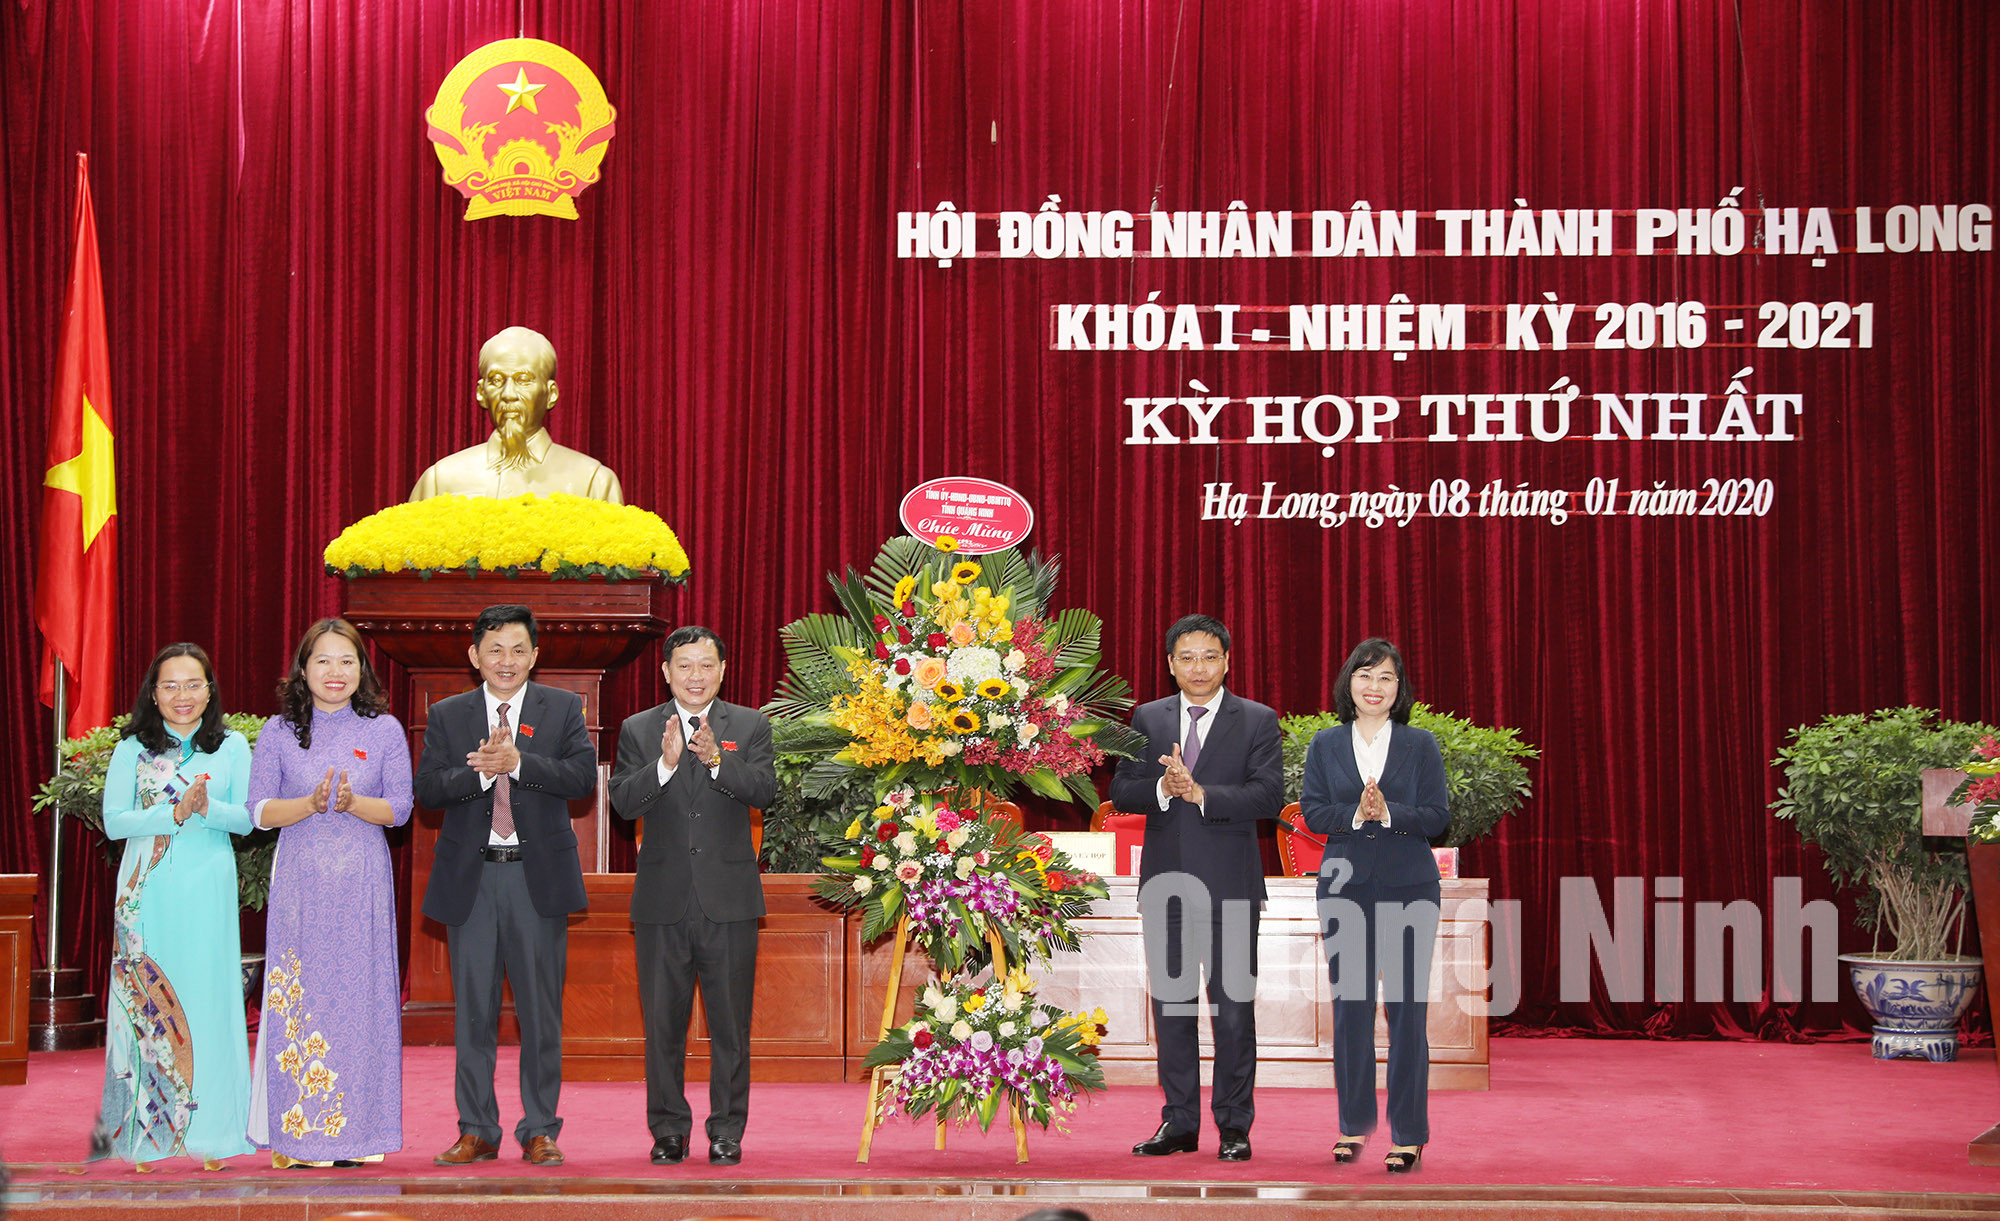 Đồng chí Nguyễn Văn Thắng, Phó Bí thư Tỉnh ủy, Chủ tịch UBND tỉnh, tặng hoa chúc mừng (1-2019). Ảnh: Đỗ Phương